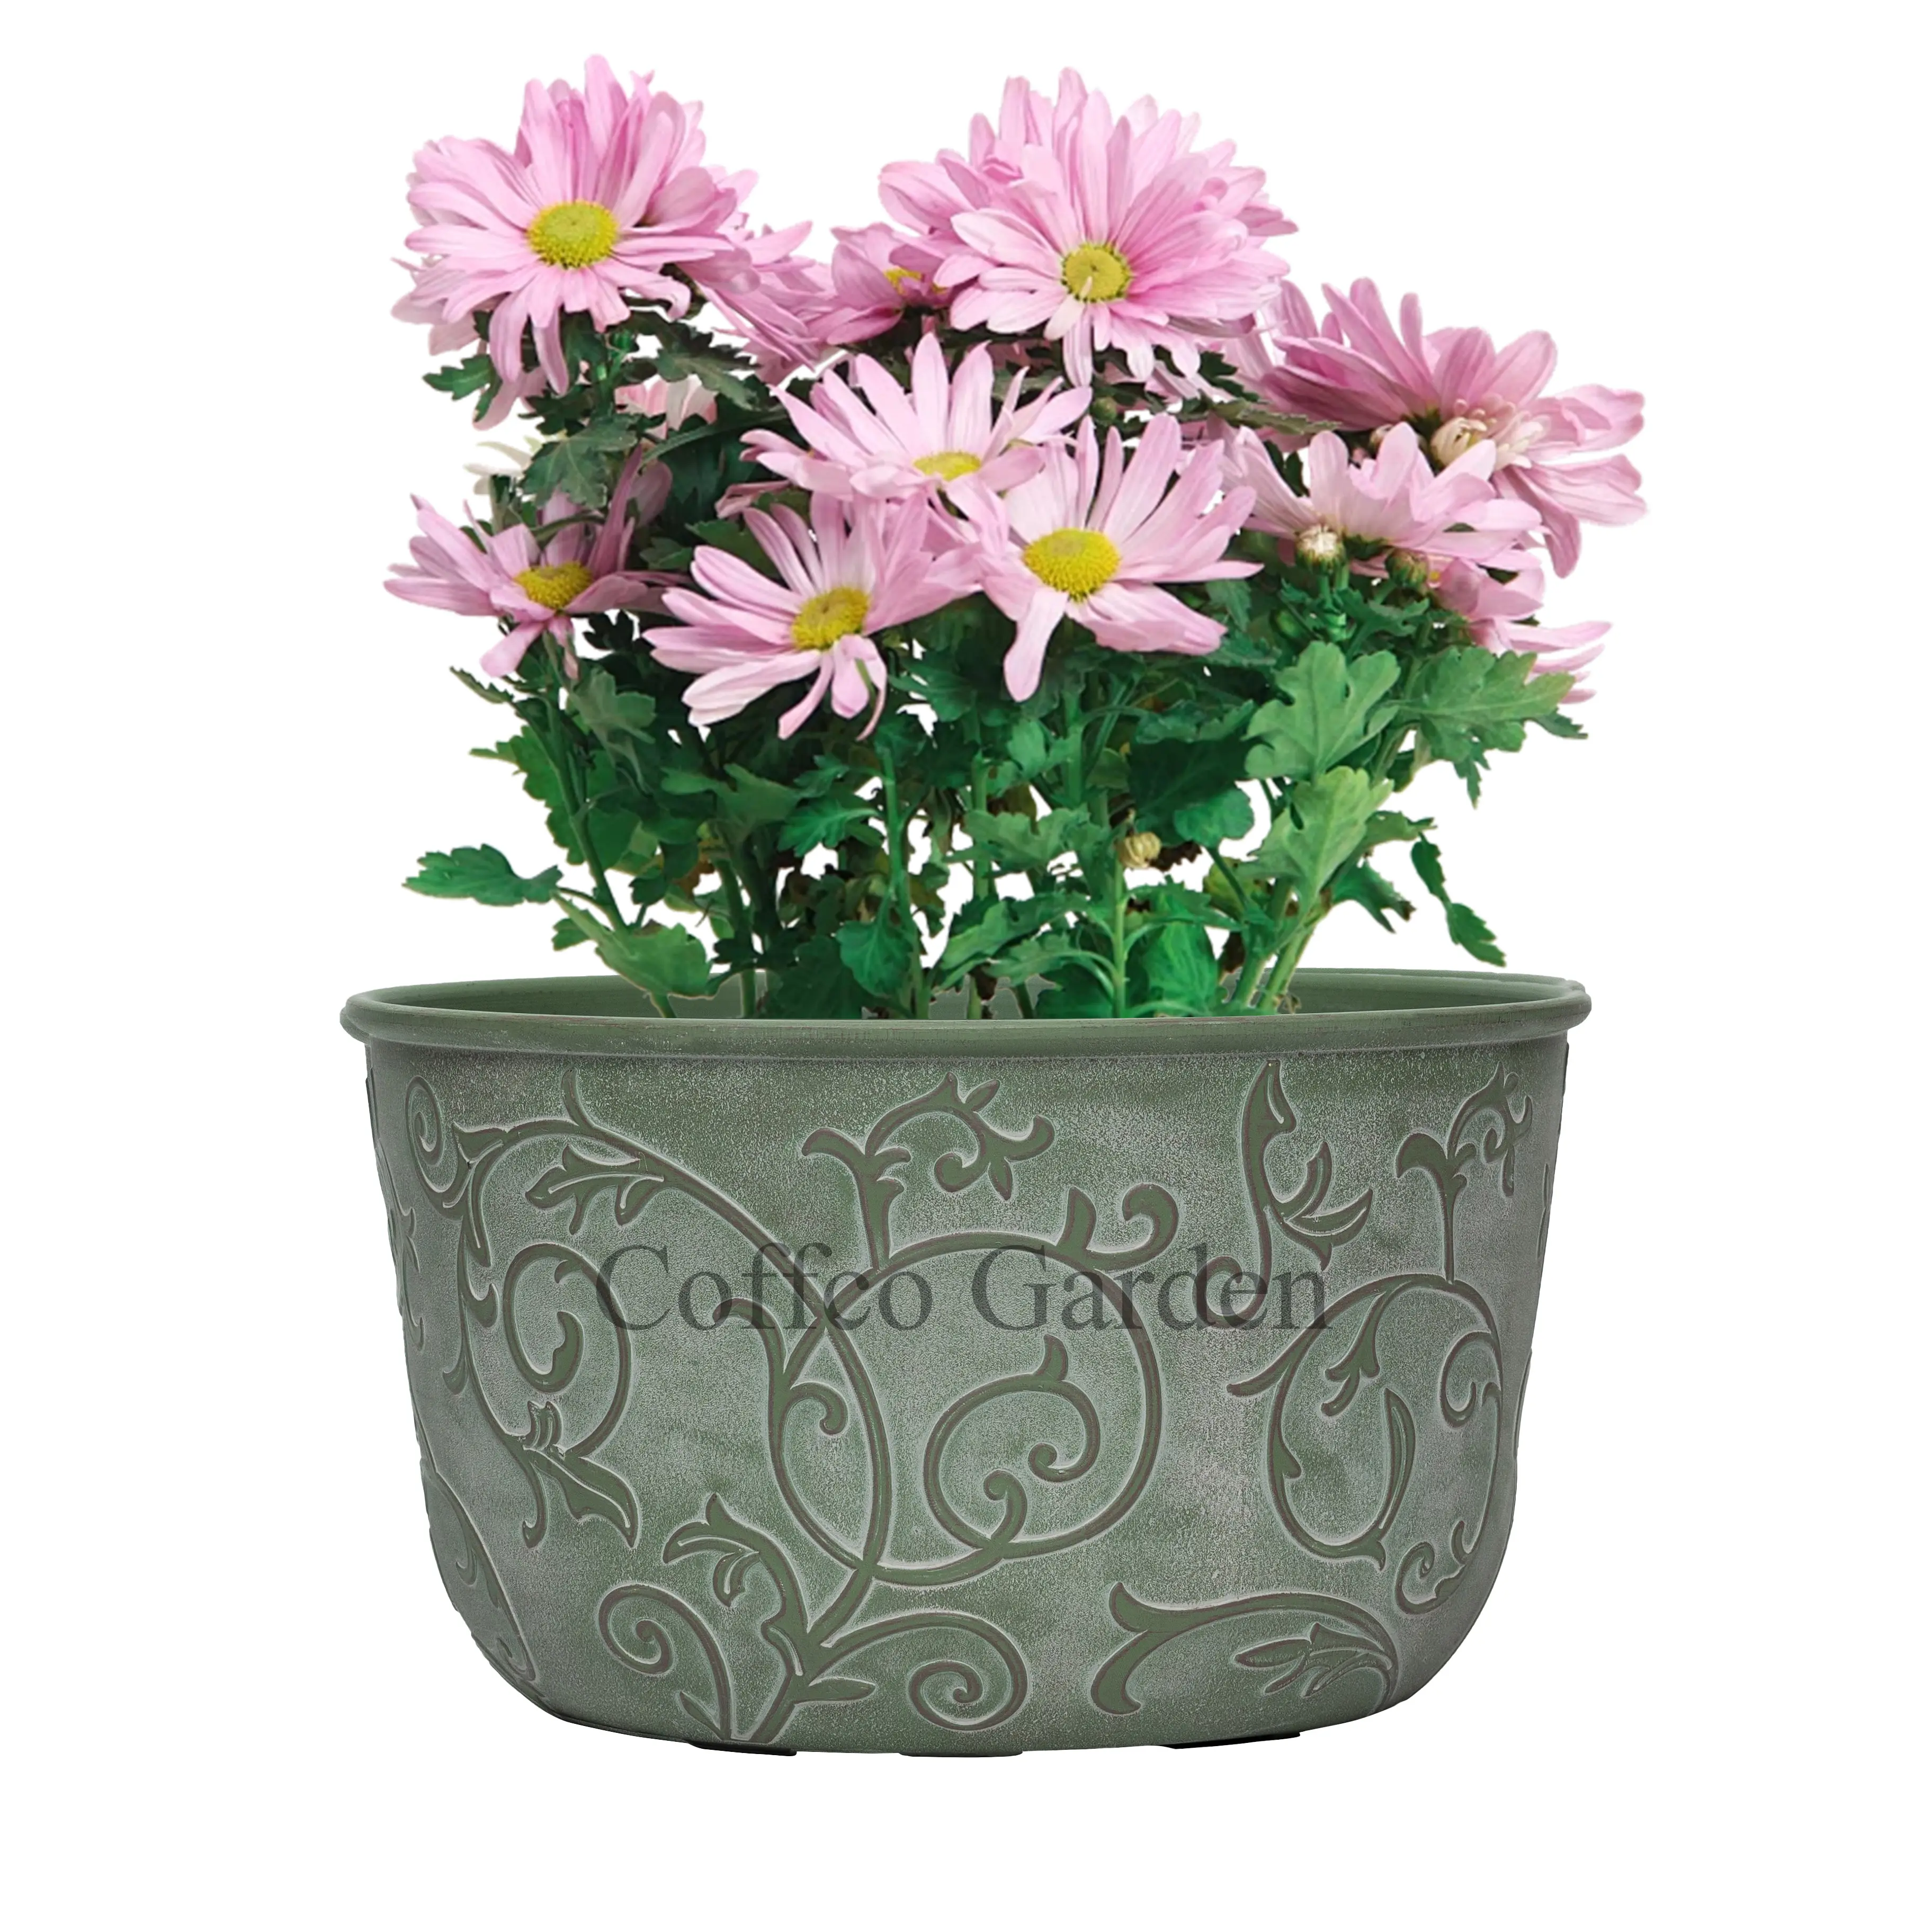 Coffco Jardim Arabesco Vaso de plástico baixo redondo para plantas, vaso de flores para decoração de jardim, artesanato com desenho de 11 polegadas